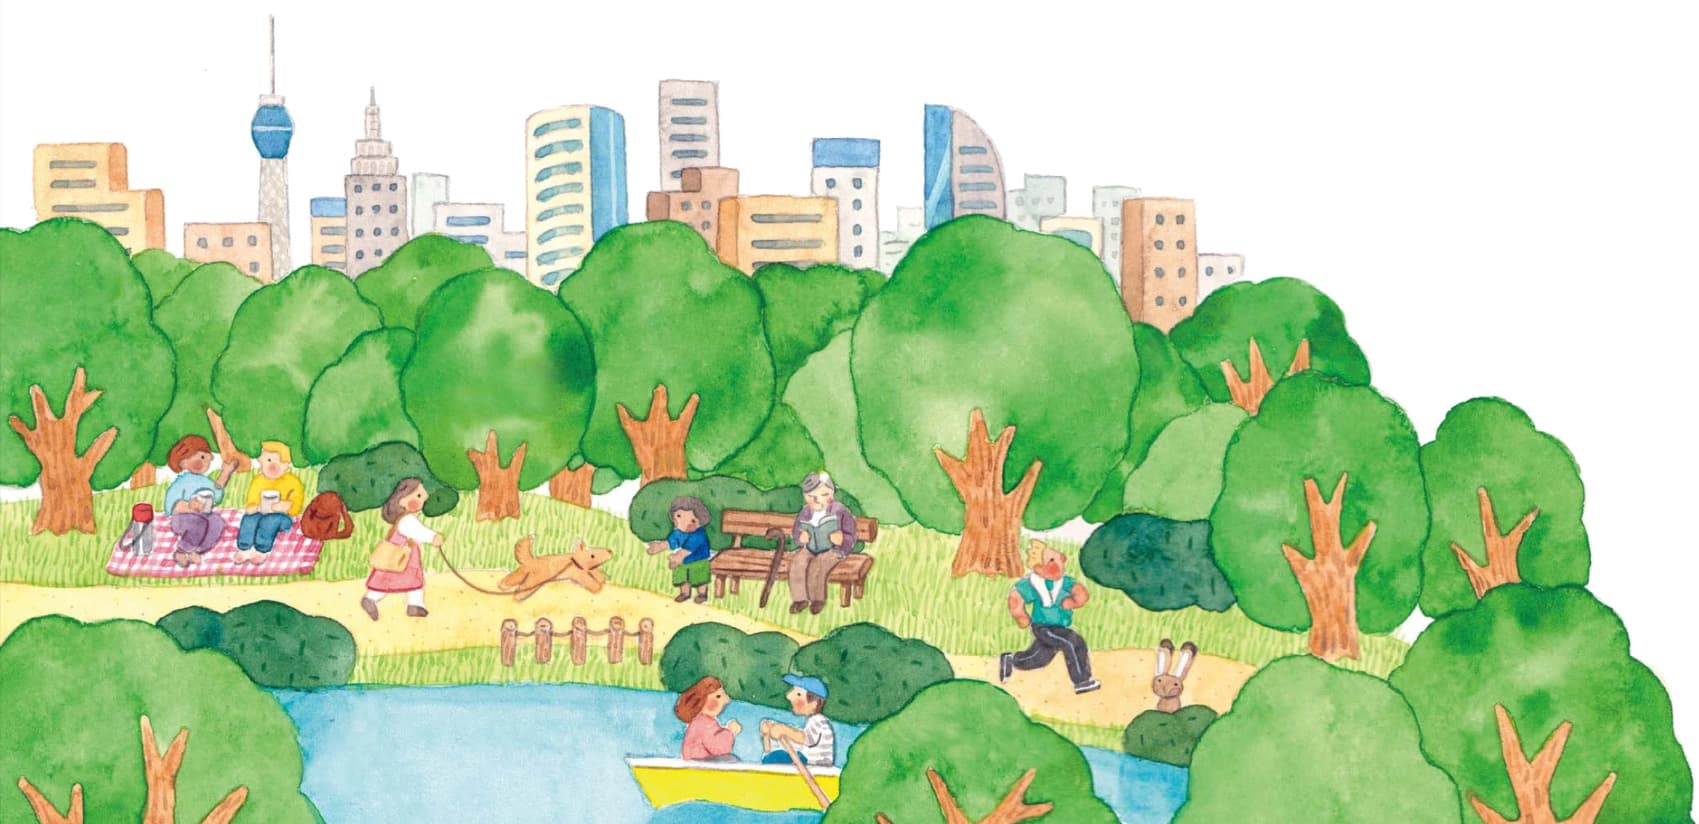 Illustration einer grünen Stadt